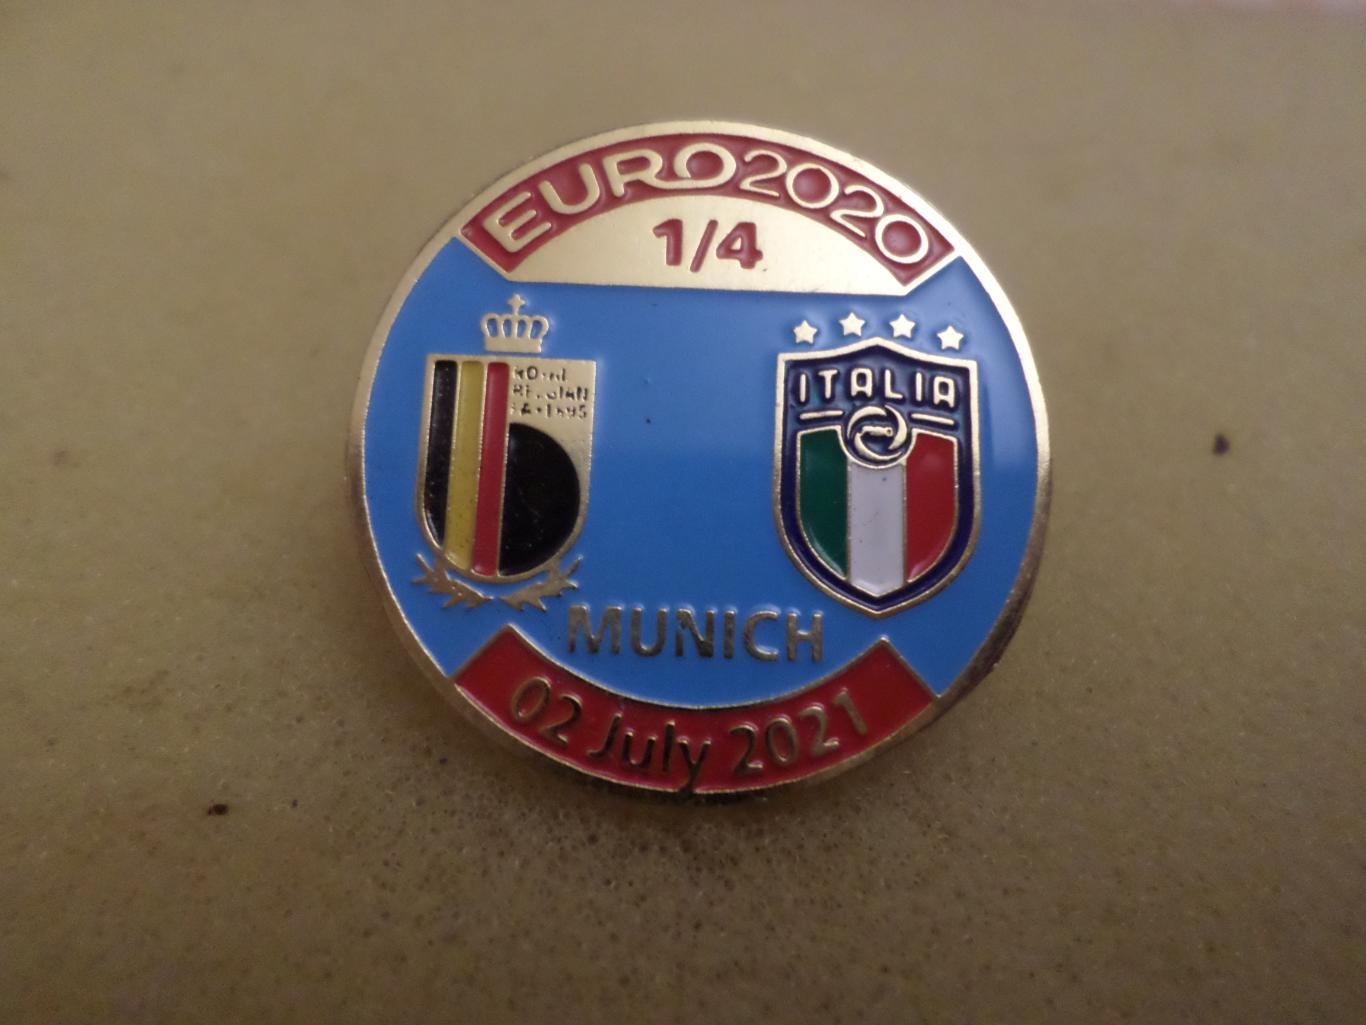 Значок ЕВРО-2020 Бельгия - Италия 2 июля 2021 г Мюнхен